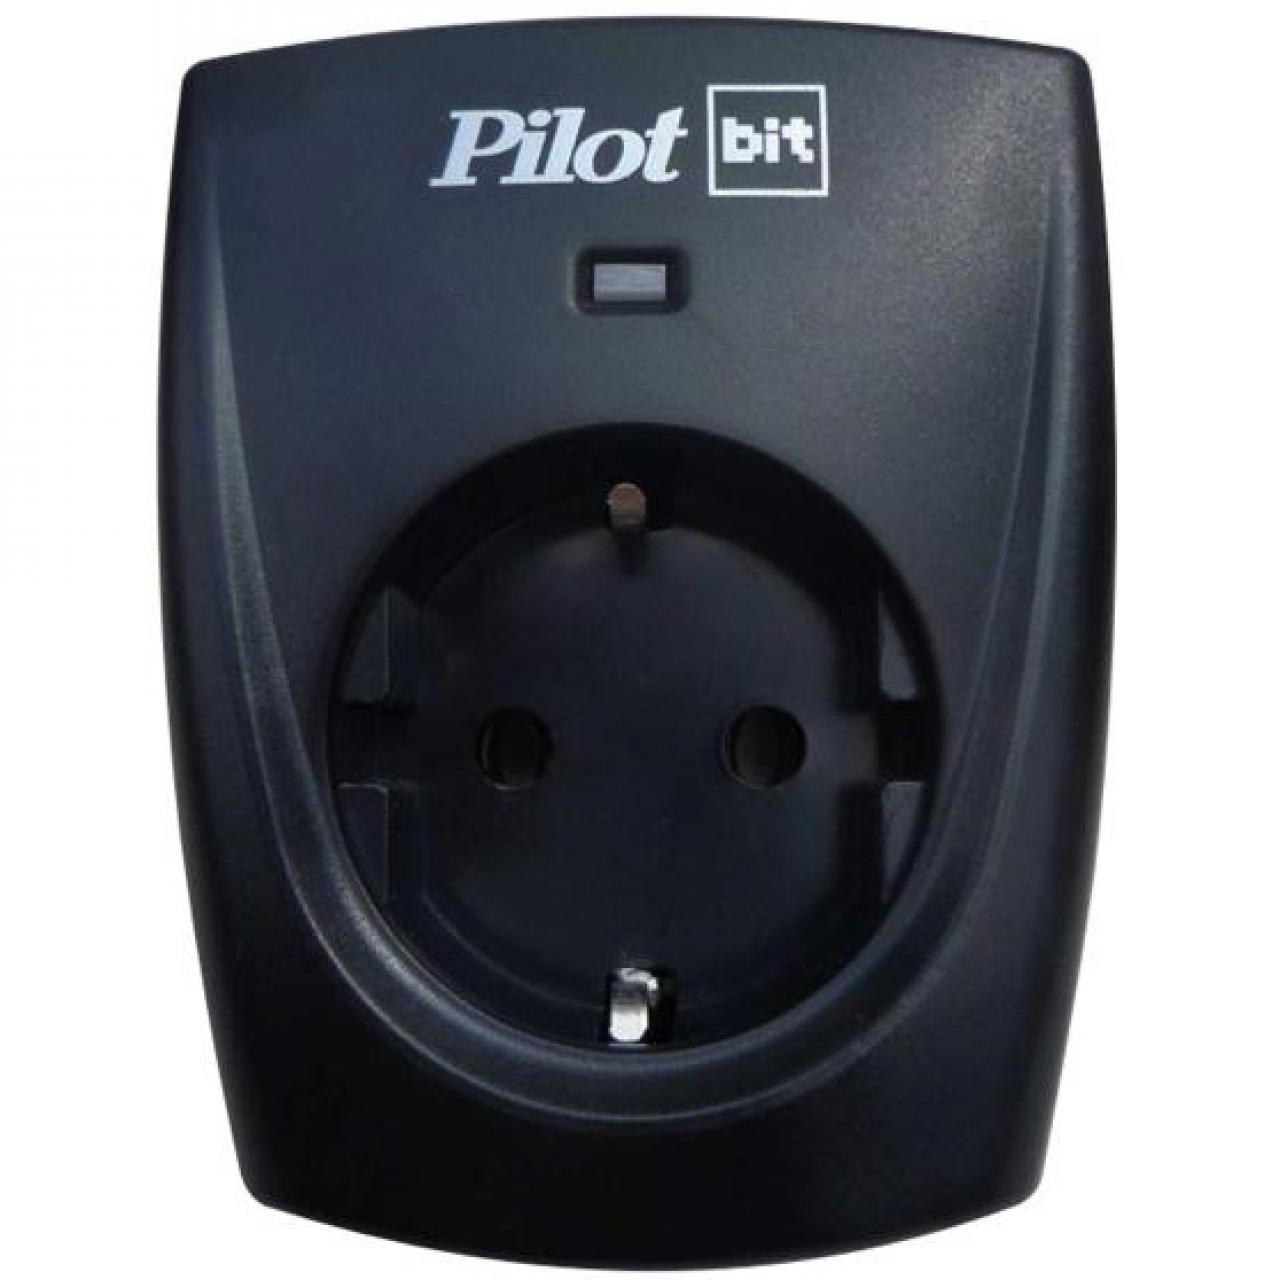 Сетевой фильтр Pilot Bit (1 розетка) черный цена и фото